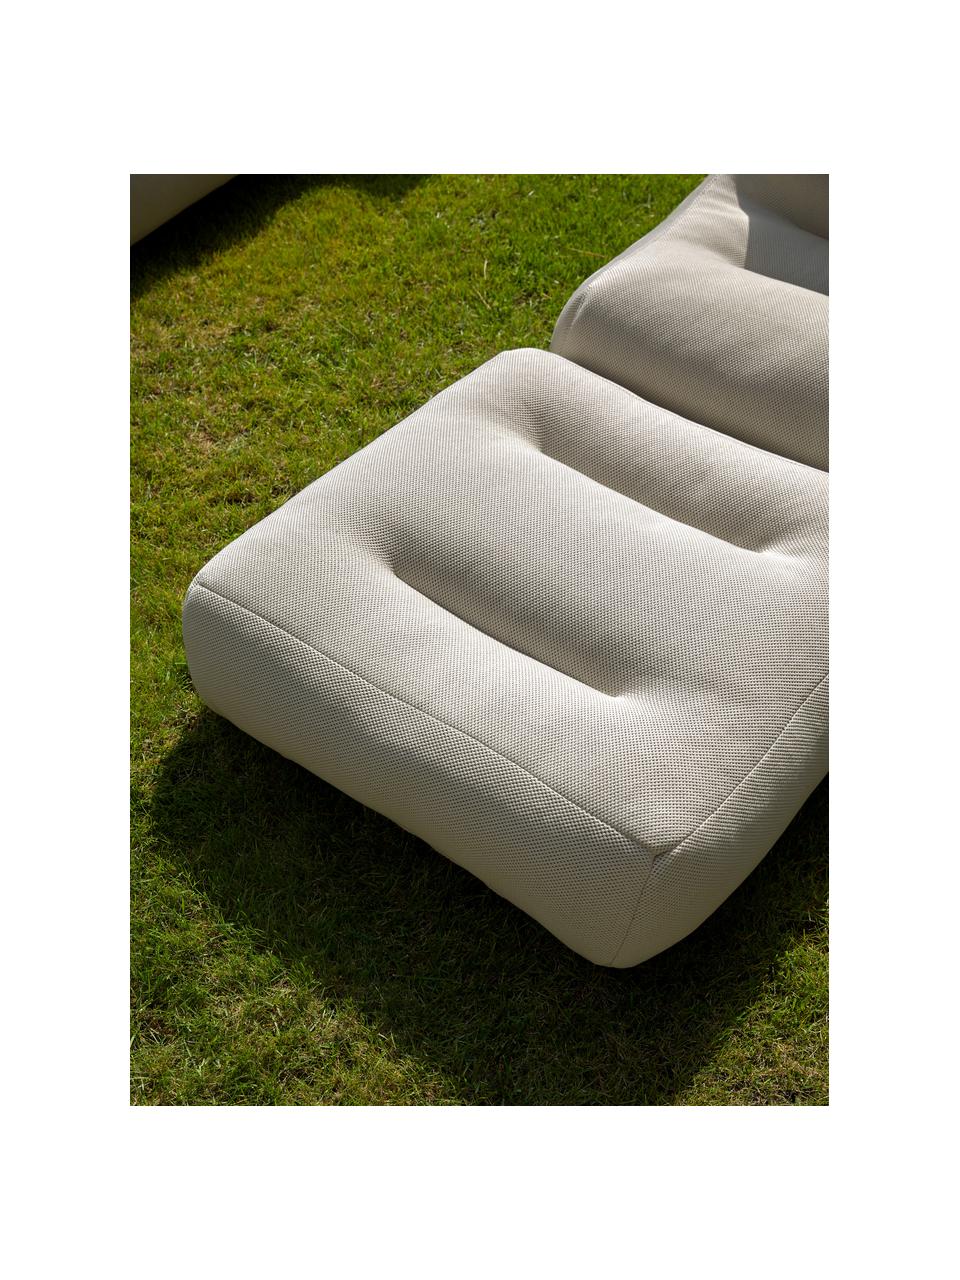 Fauteuil lounge de jardin avec fonction chaise longue Sit Pool, Beige clair, larg. 75 x haut. 85 cm